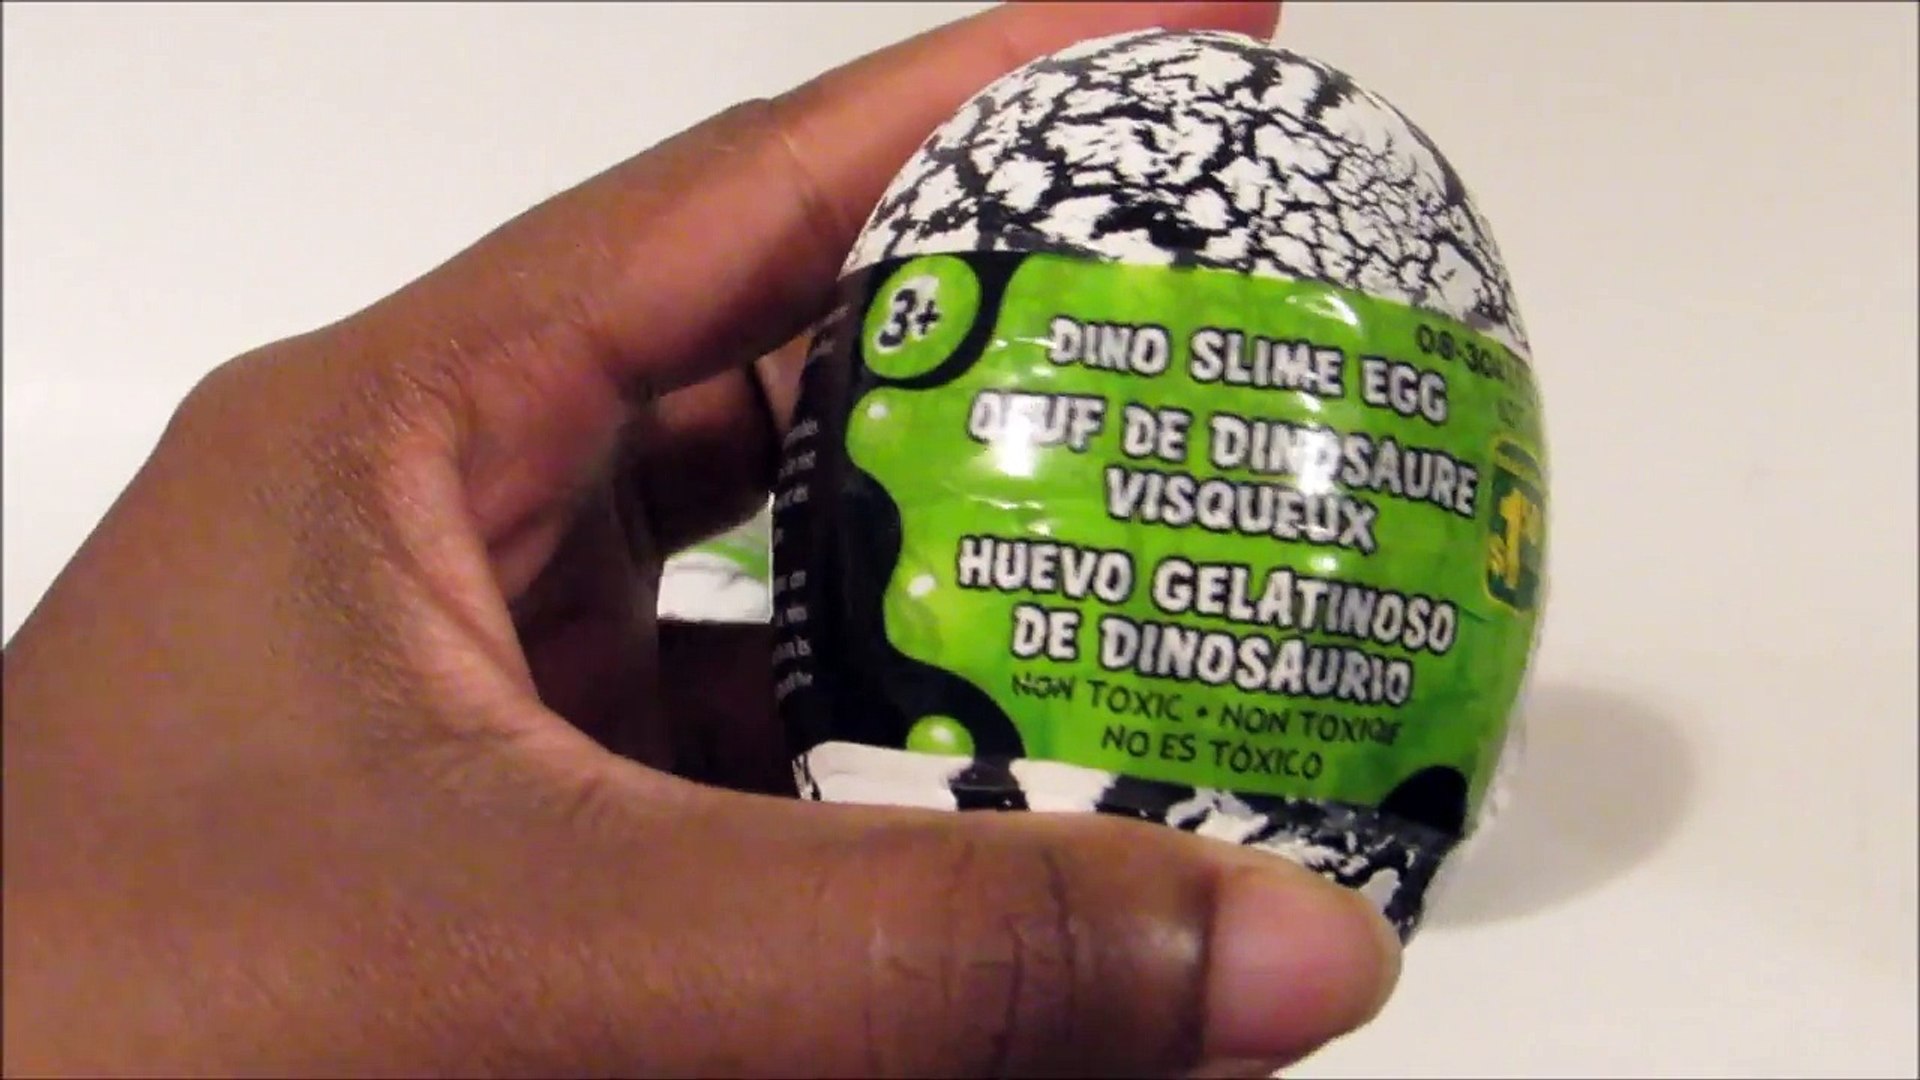 dinosaur egg slime toy